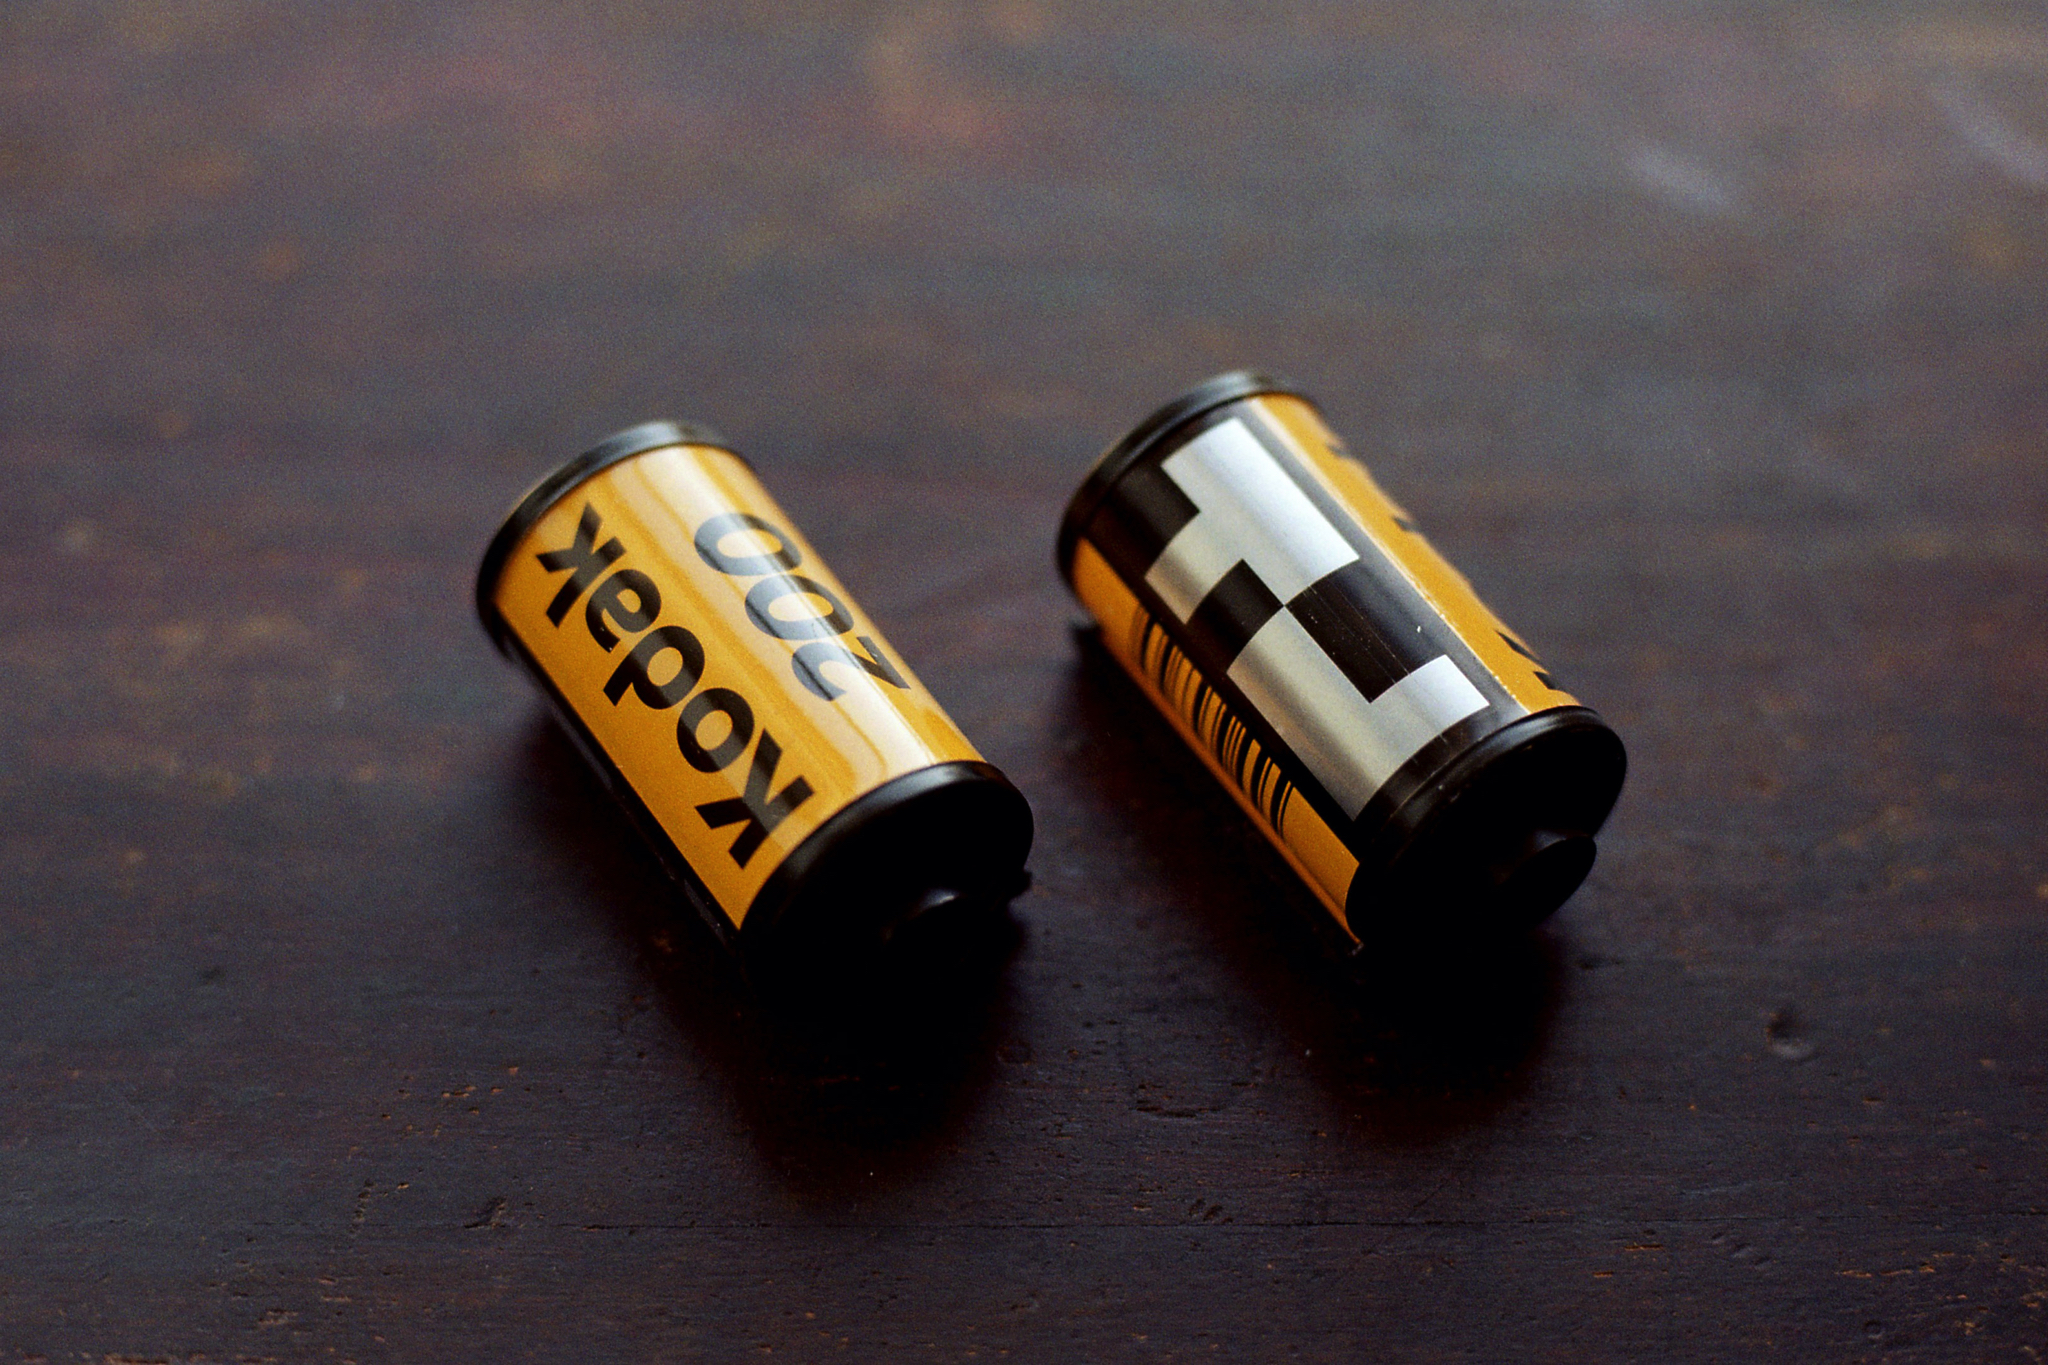 Kodak GOLD 200 / 手ごろな価格で楽しめるカラーネガ - analogue.is